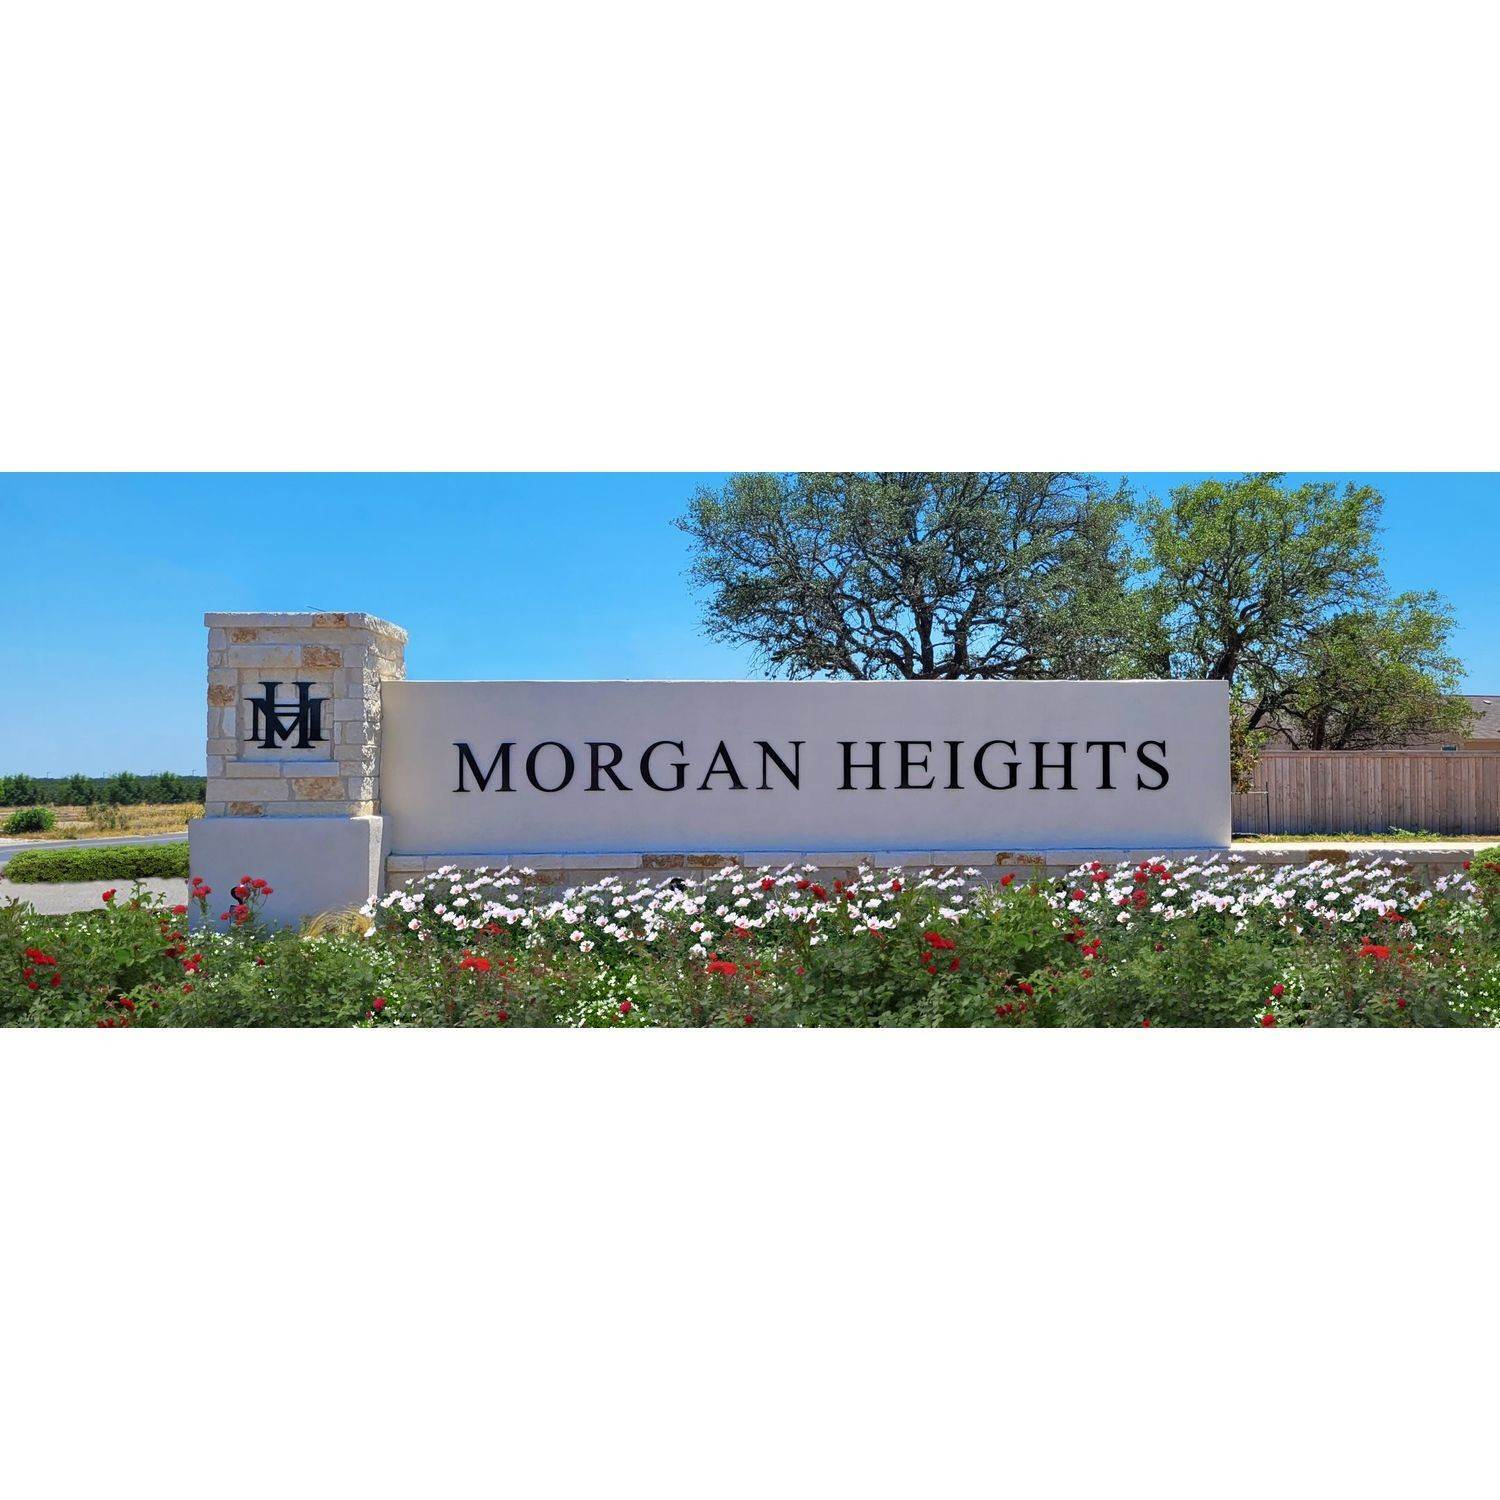 Morgan Heights building at 5406 Daphne Path, San Antonio, TX 78253